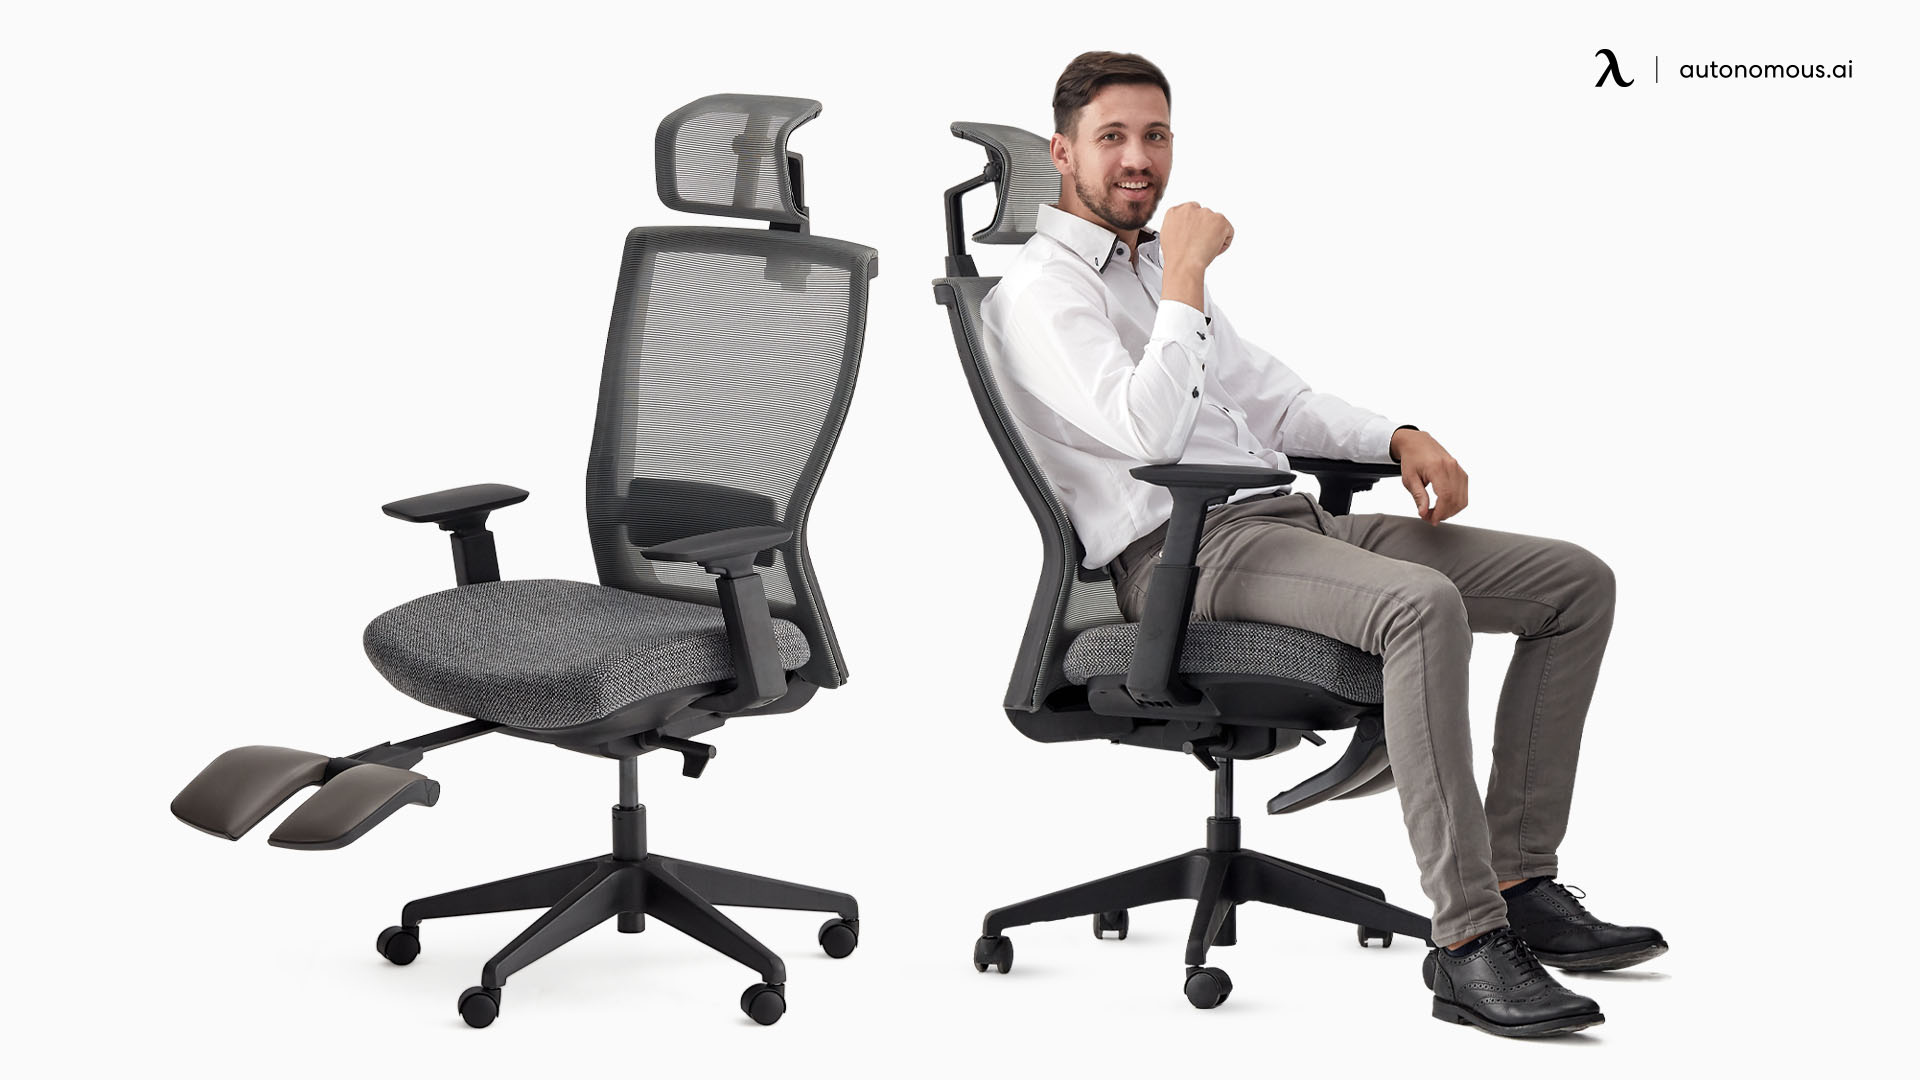 ErgoChair Recline top-rated ergonomic office chair